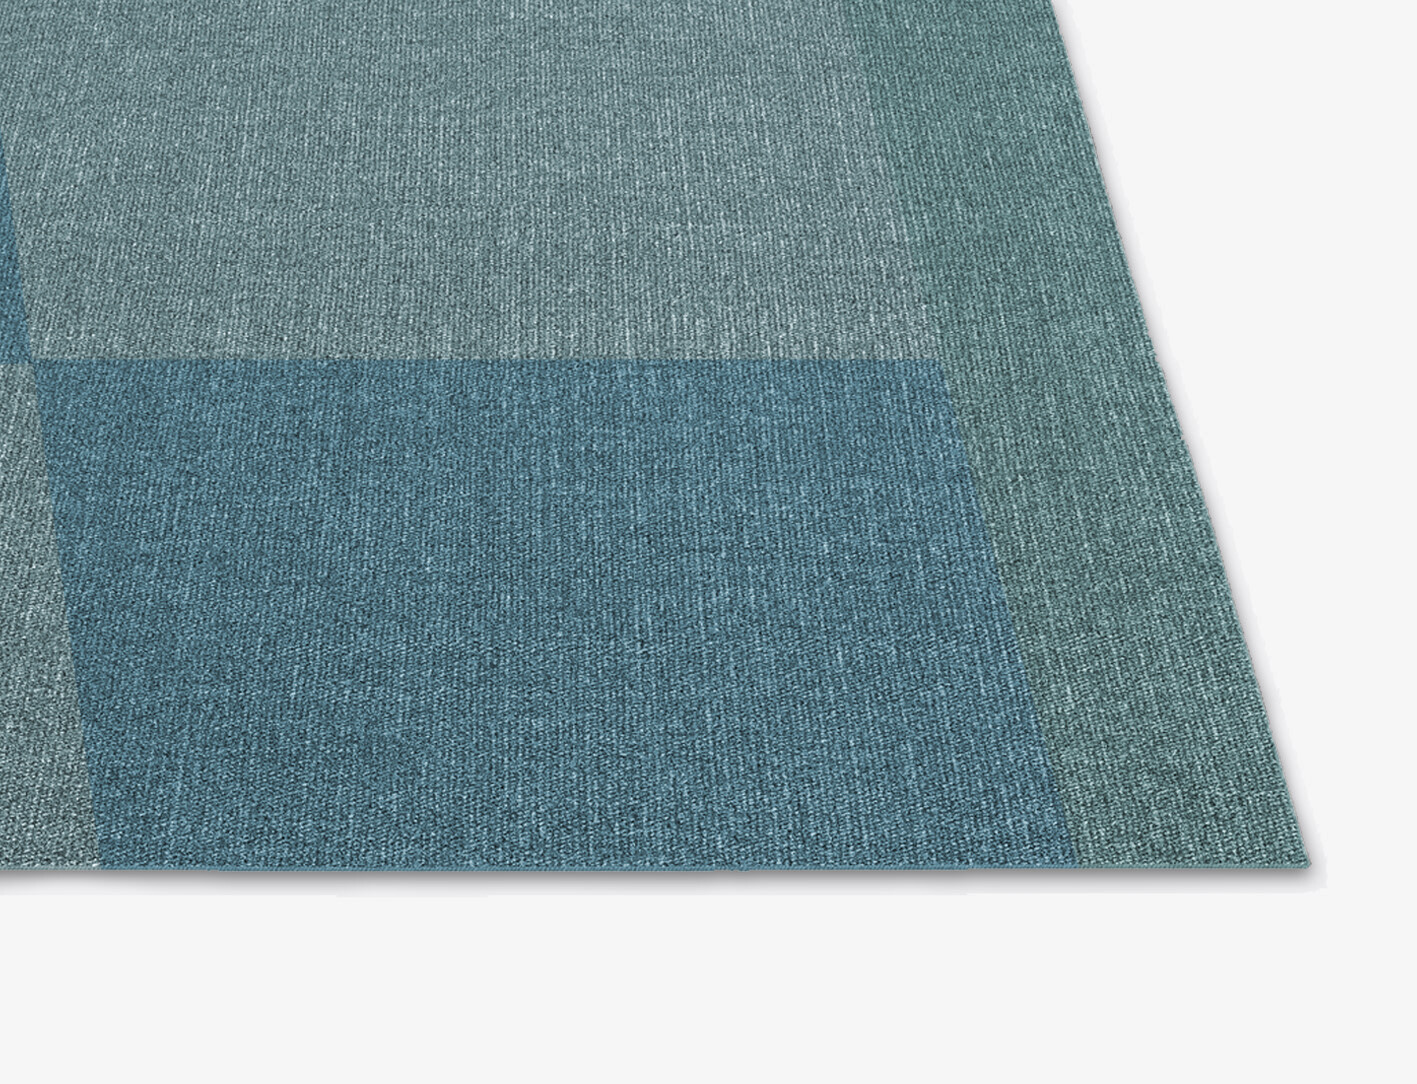 Weevil Geometric Square Flatweave New Zealand Wool Custom Rug by Rug Artisan